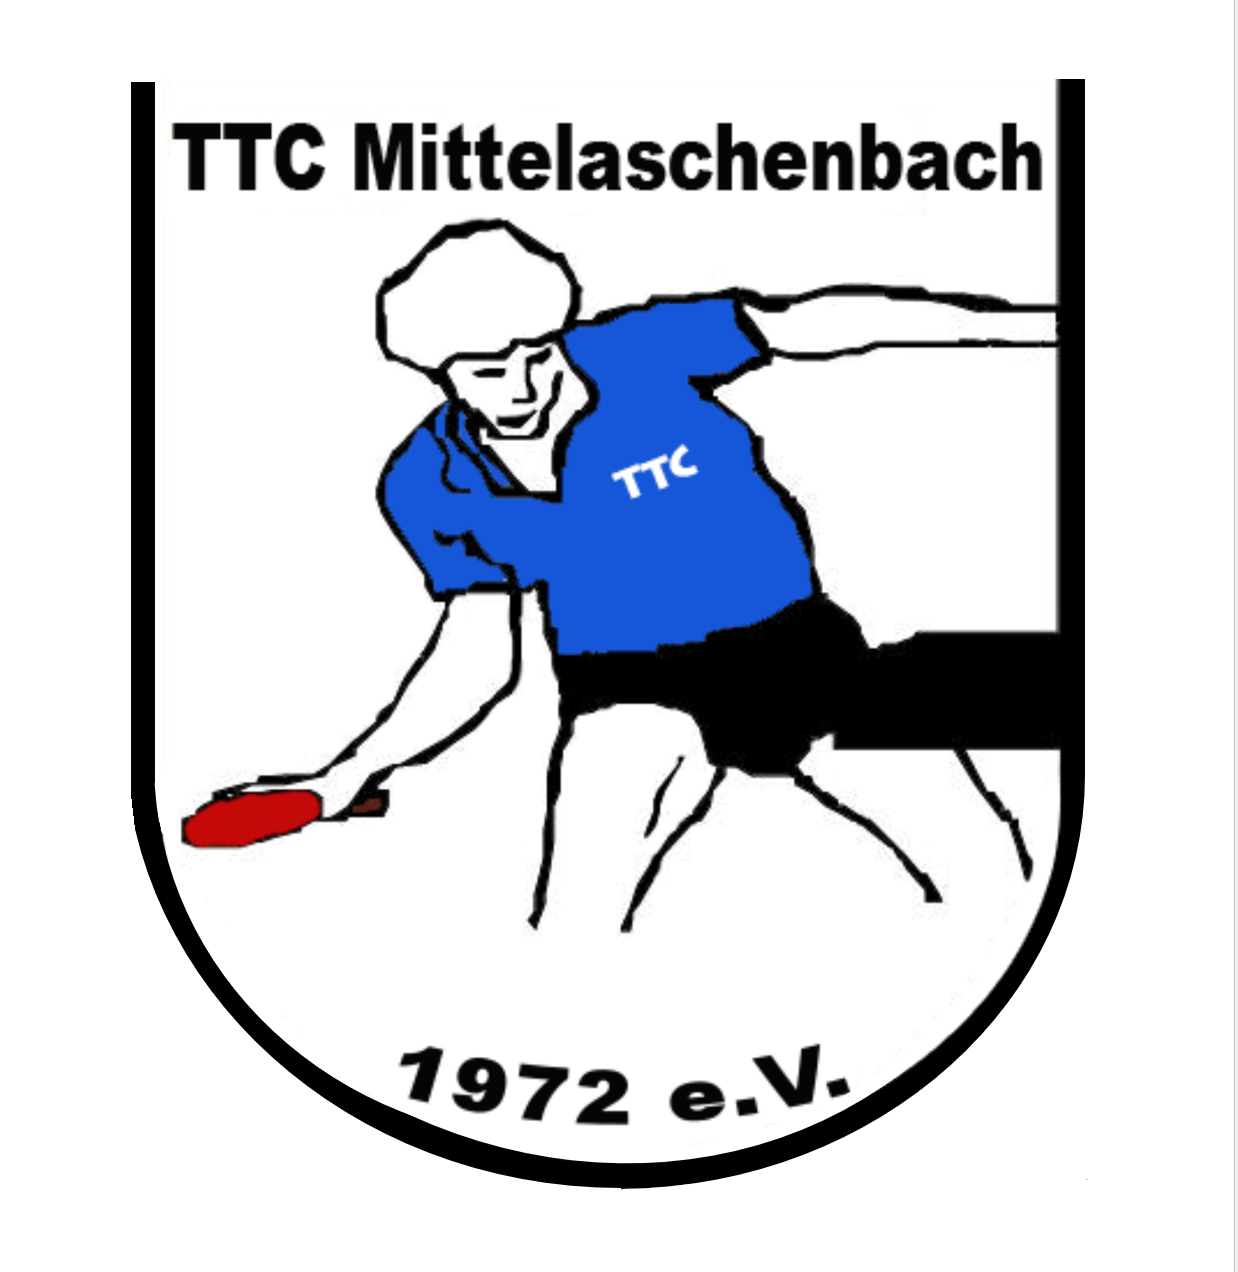 TTC Mittelaschenbach 1972 e.V.